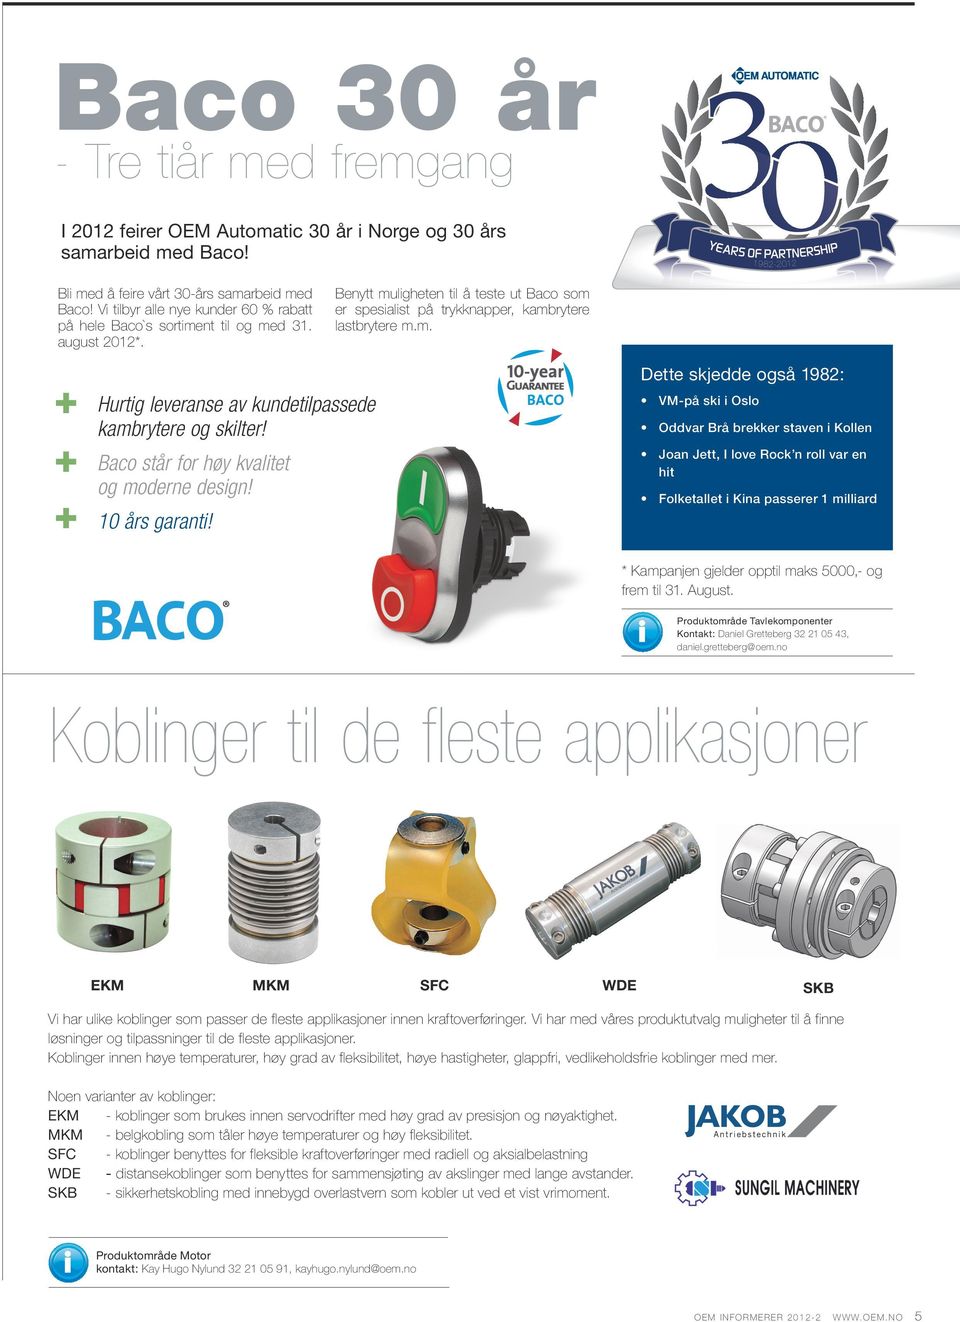 Baco står for høy kvalitet og moderne design! 10 års garanti!